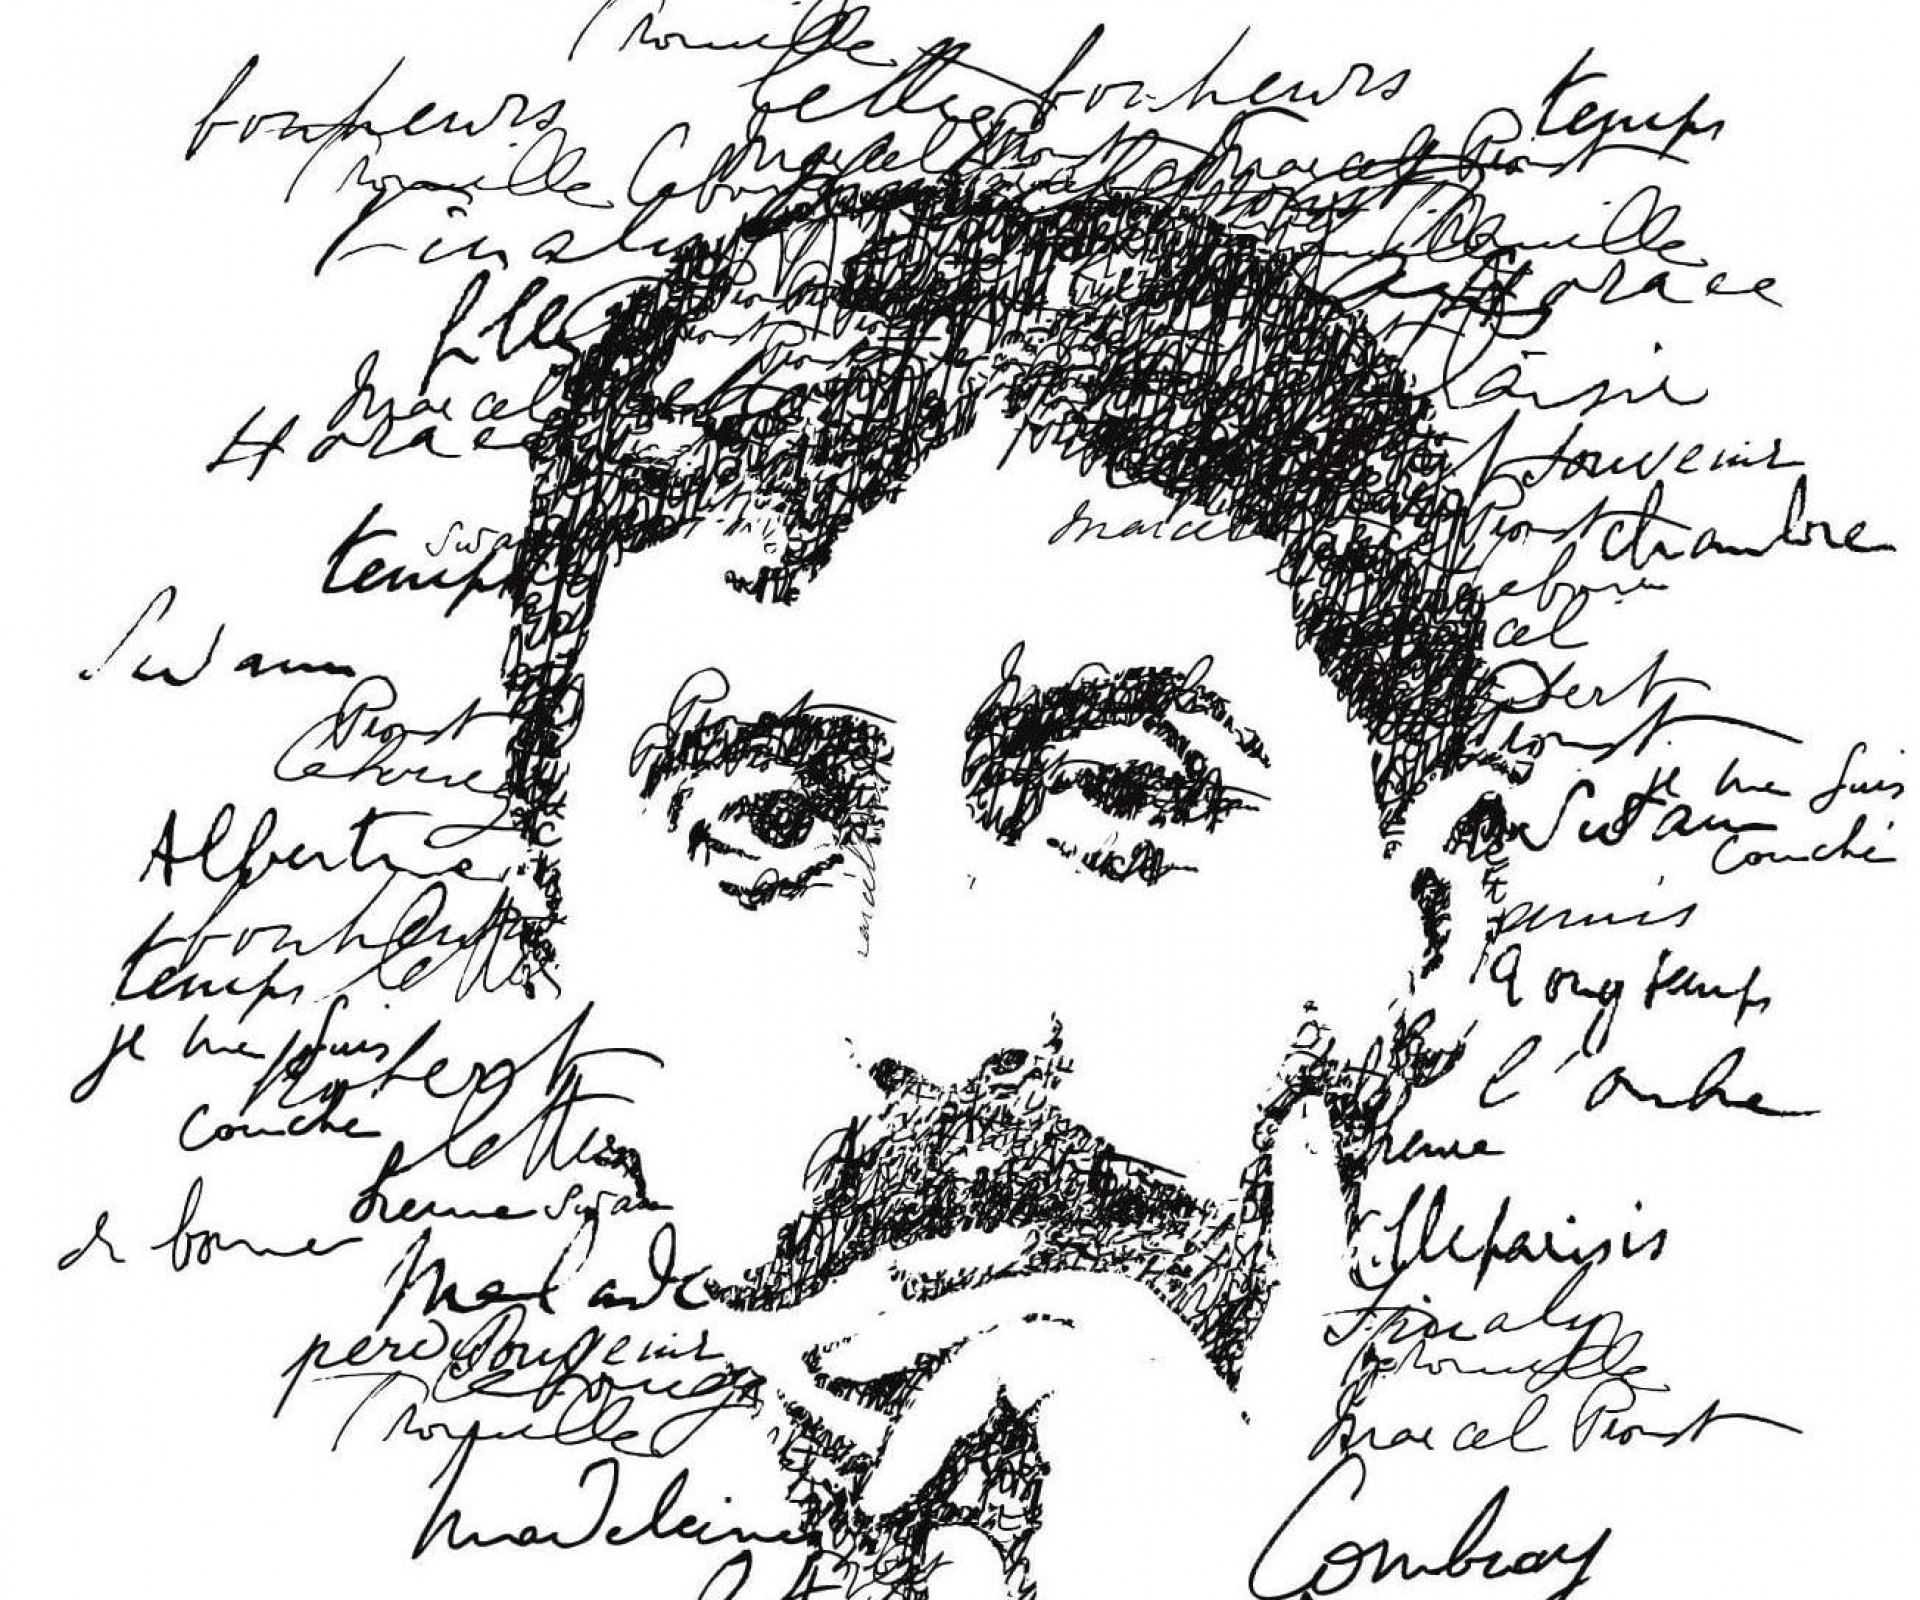 FONDAZIONE PRIMOLI - Riflessioni psicoanalitiche e letterarie sull’opera di Marcel Proust / CONFERENZA 14 Ottobre 2022 - ore 17:00